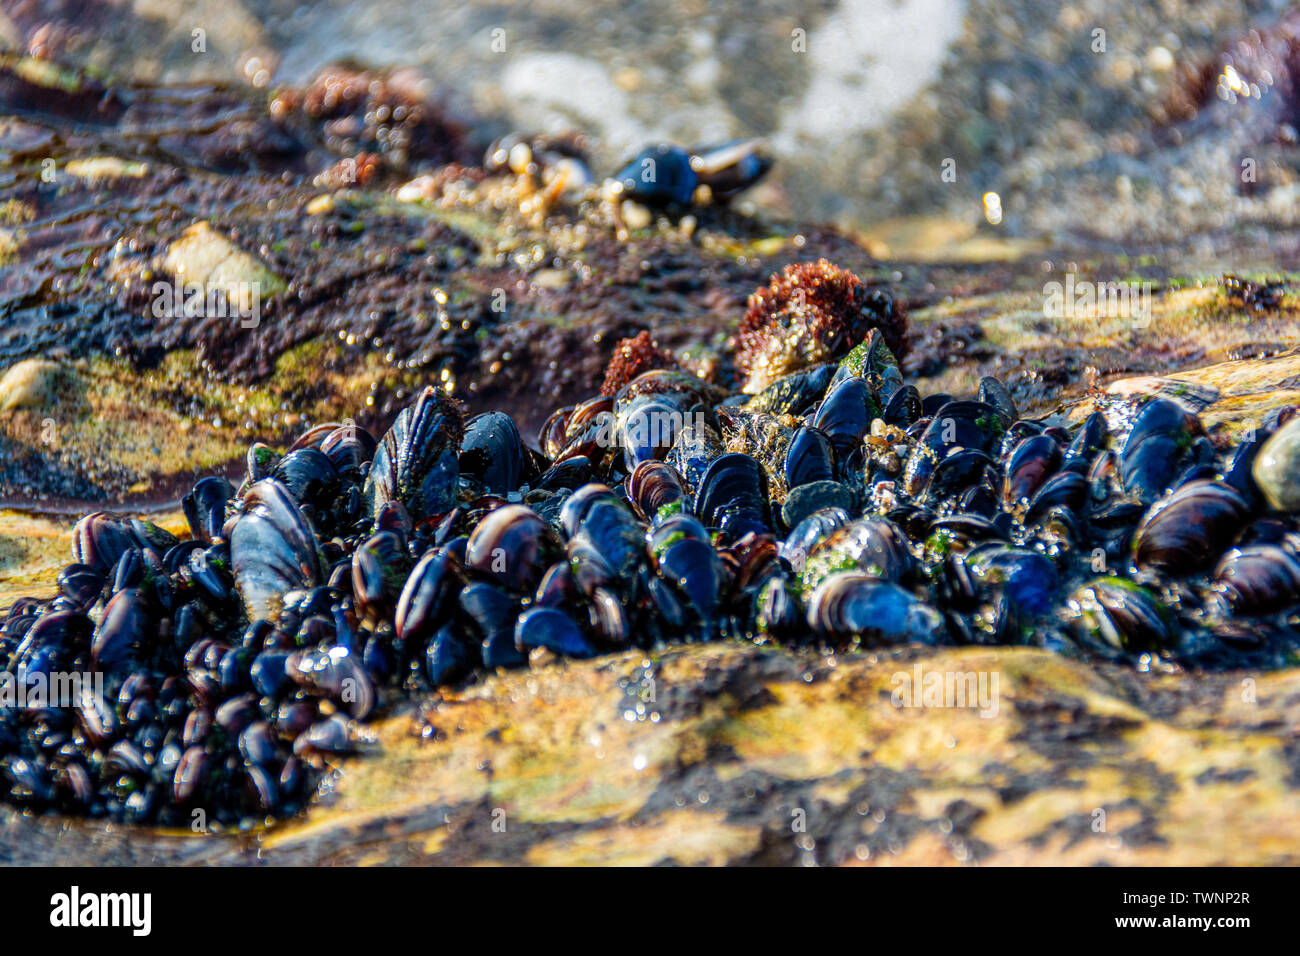 La cozza blu (Mytilus edulis), noto anche come la cozza, è di medie dimensioni con marini commestibili di molluschi bivalvi in Famiglia Mytilidae, mitili Foto Stock